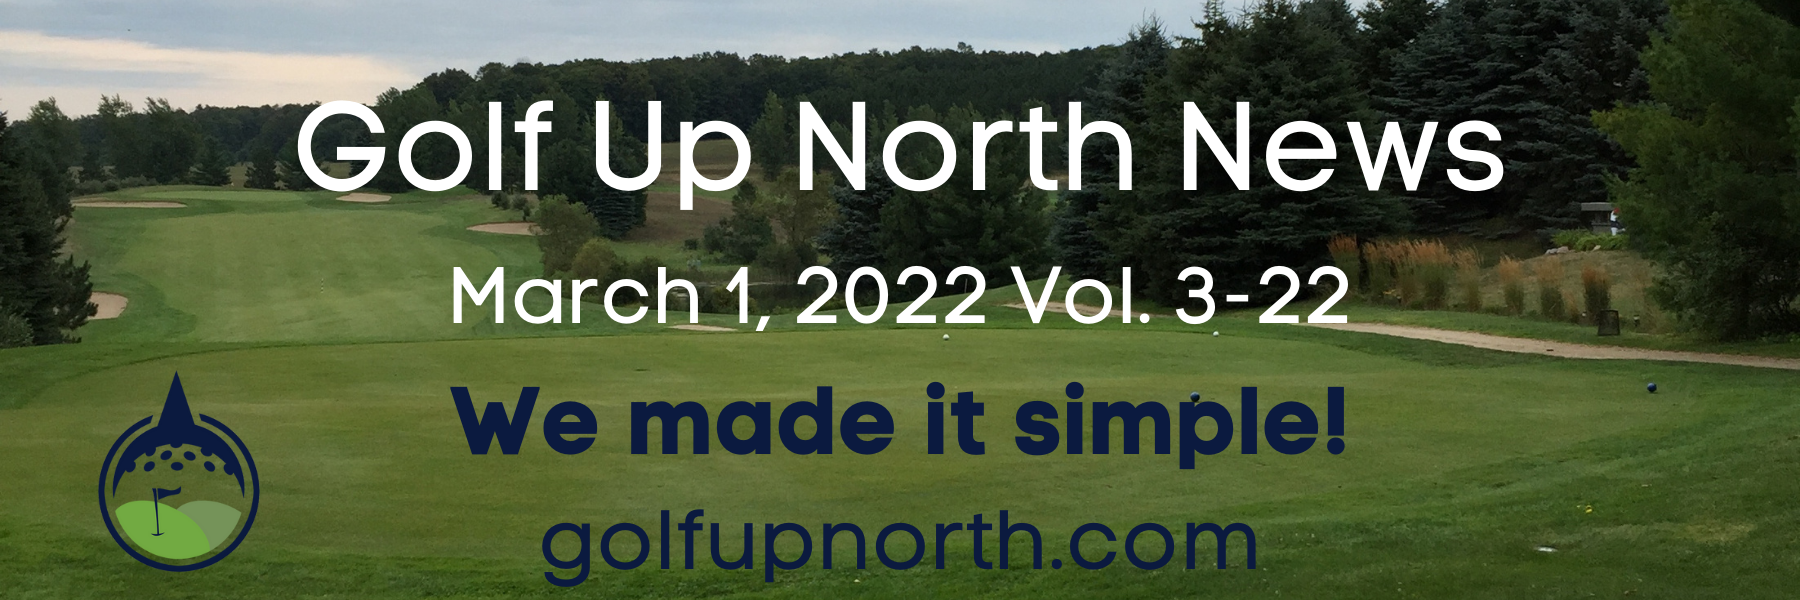 Golf Up North Newsletter March 1, 2022 Header